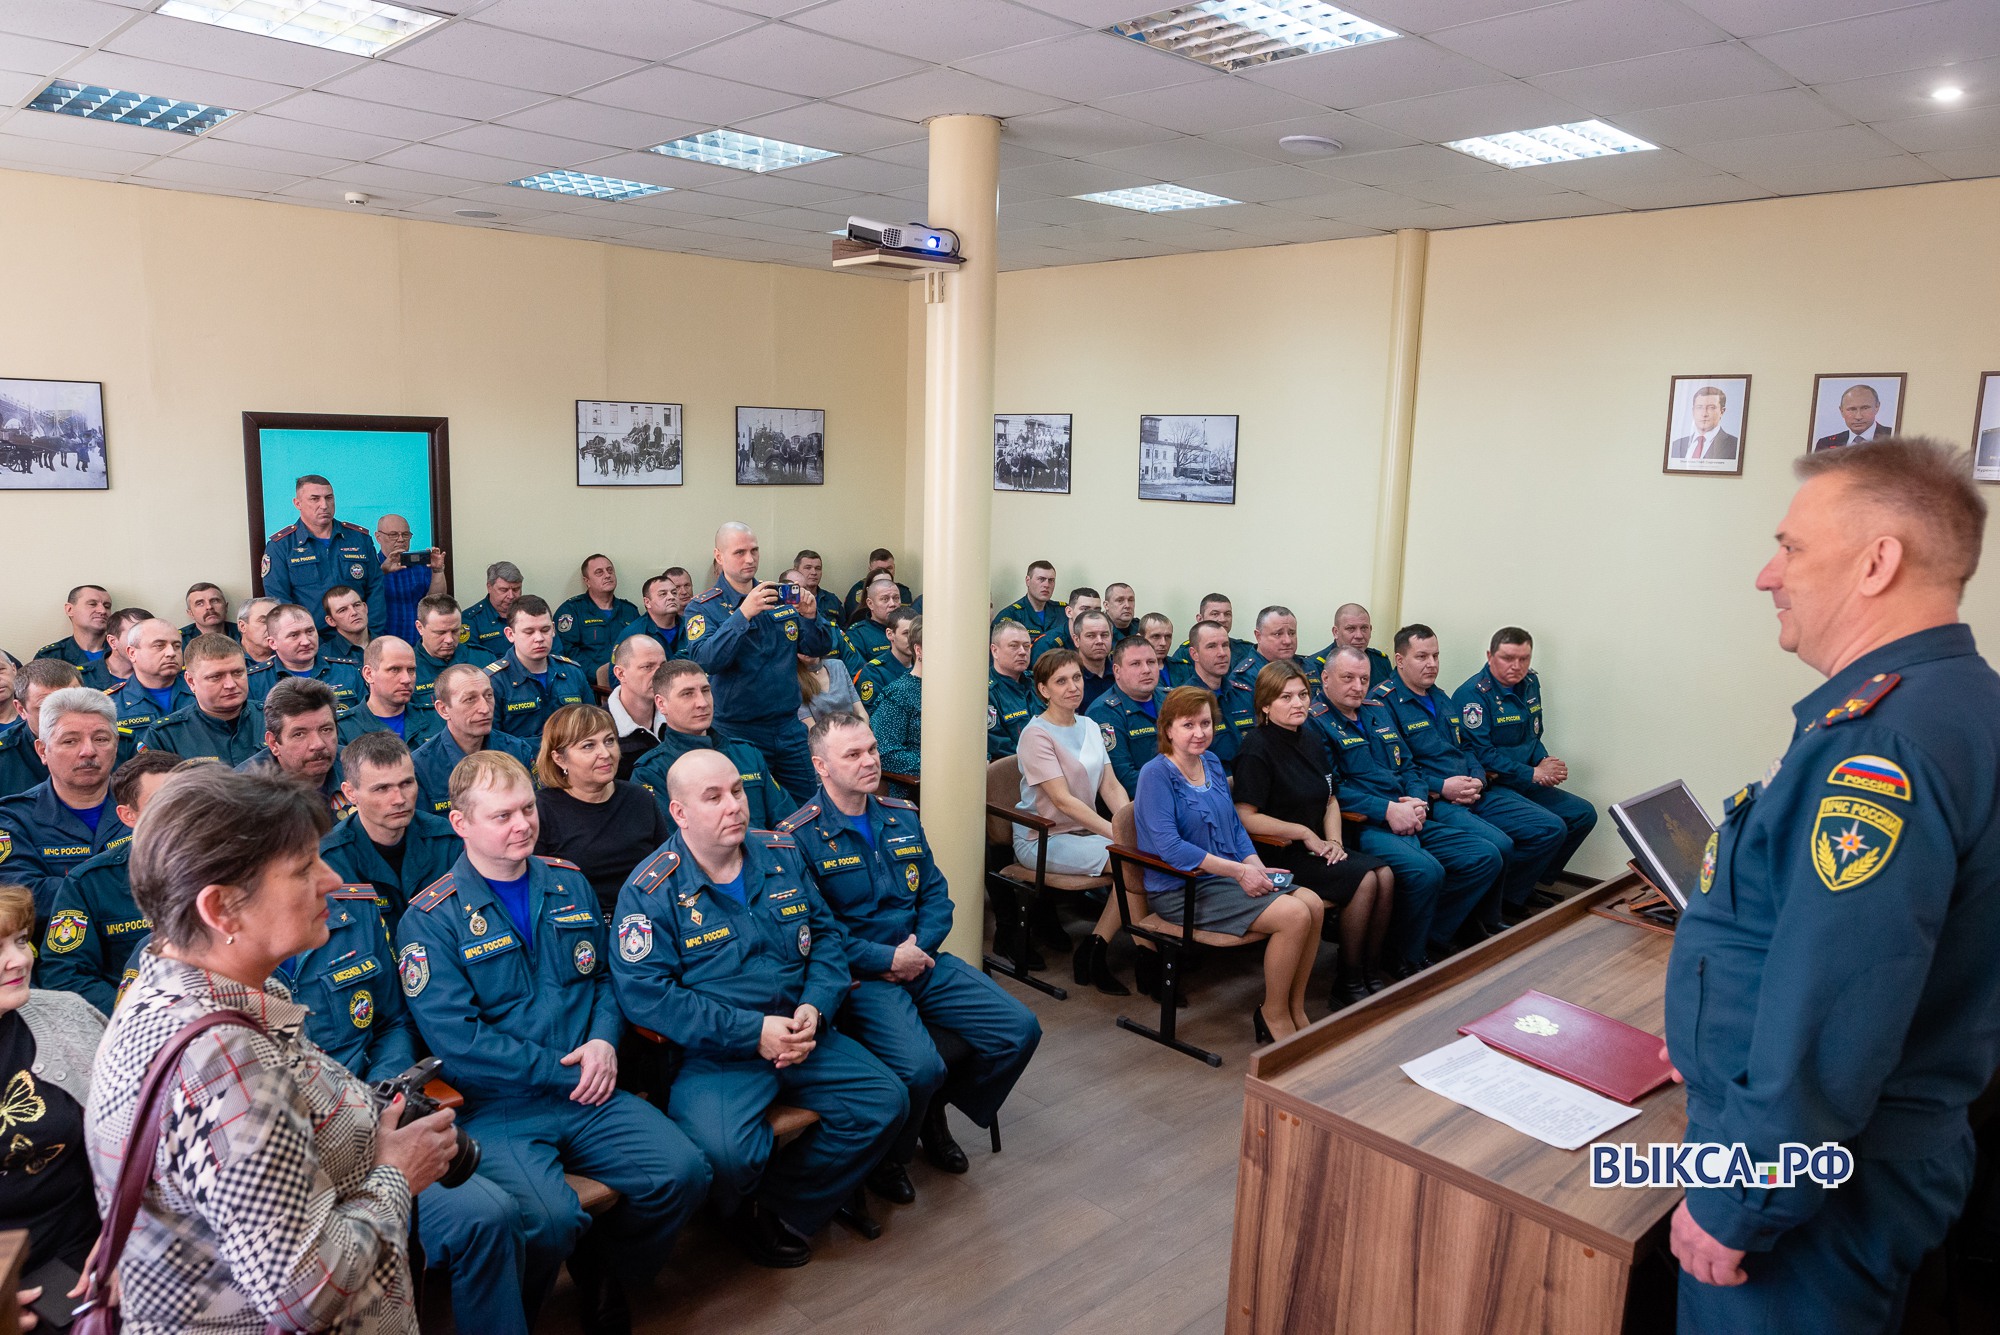 Начальника пожарной части Дмитрия Зюзина торжественно проводили на пенсию 📷